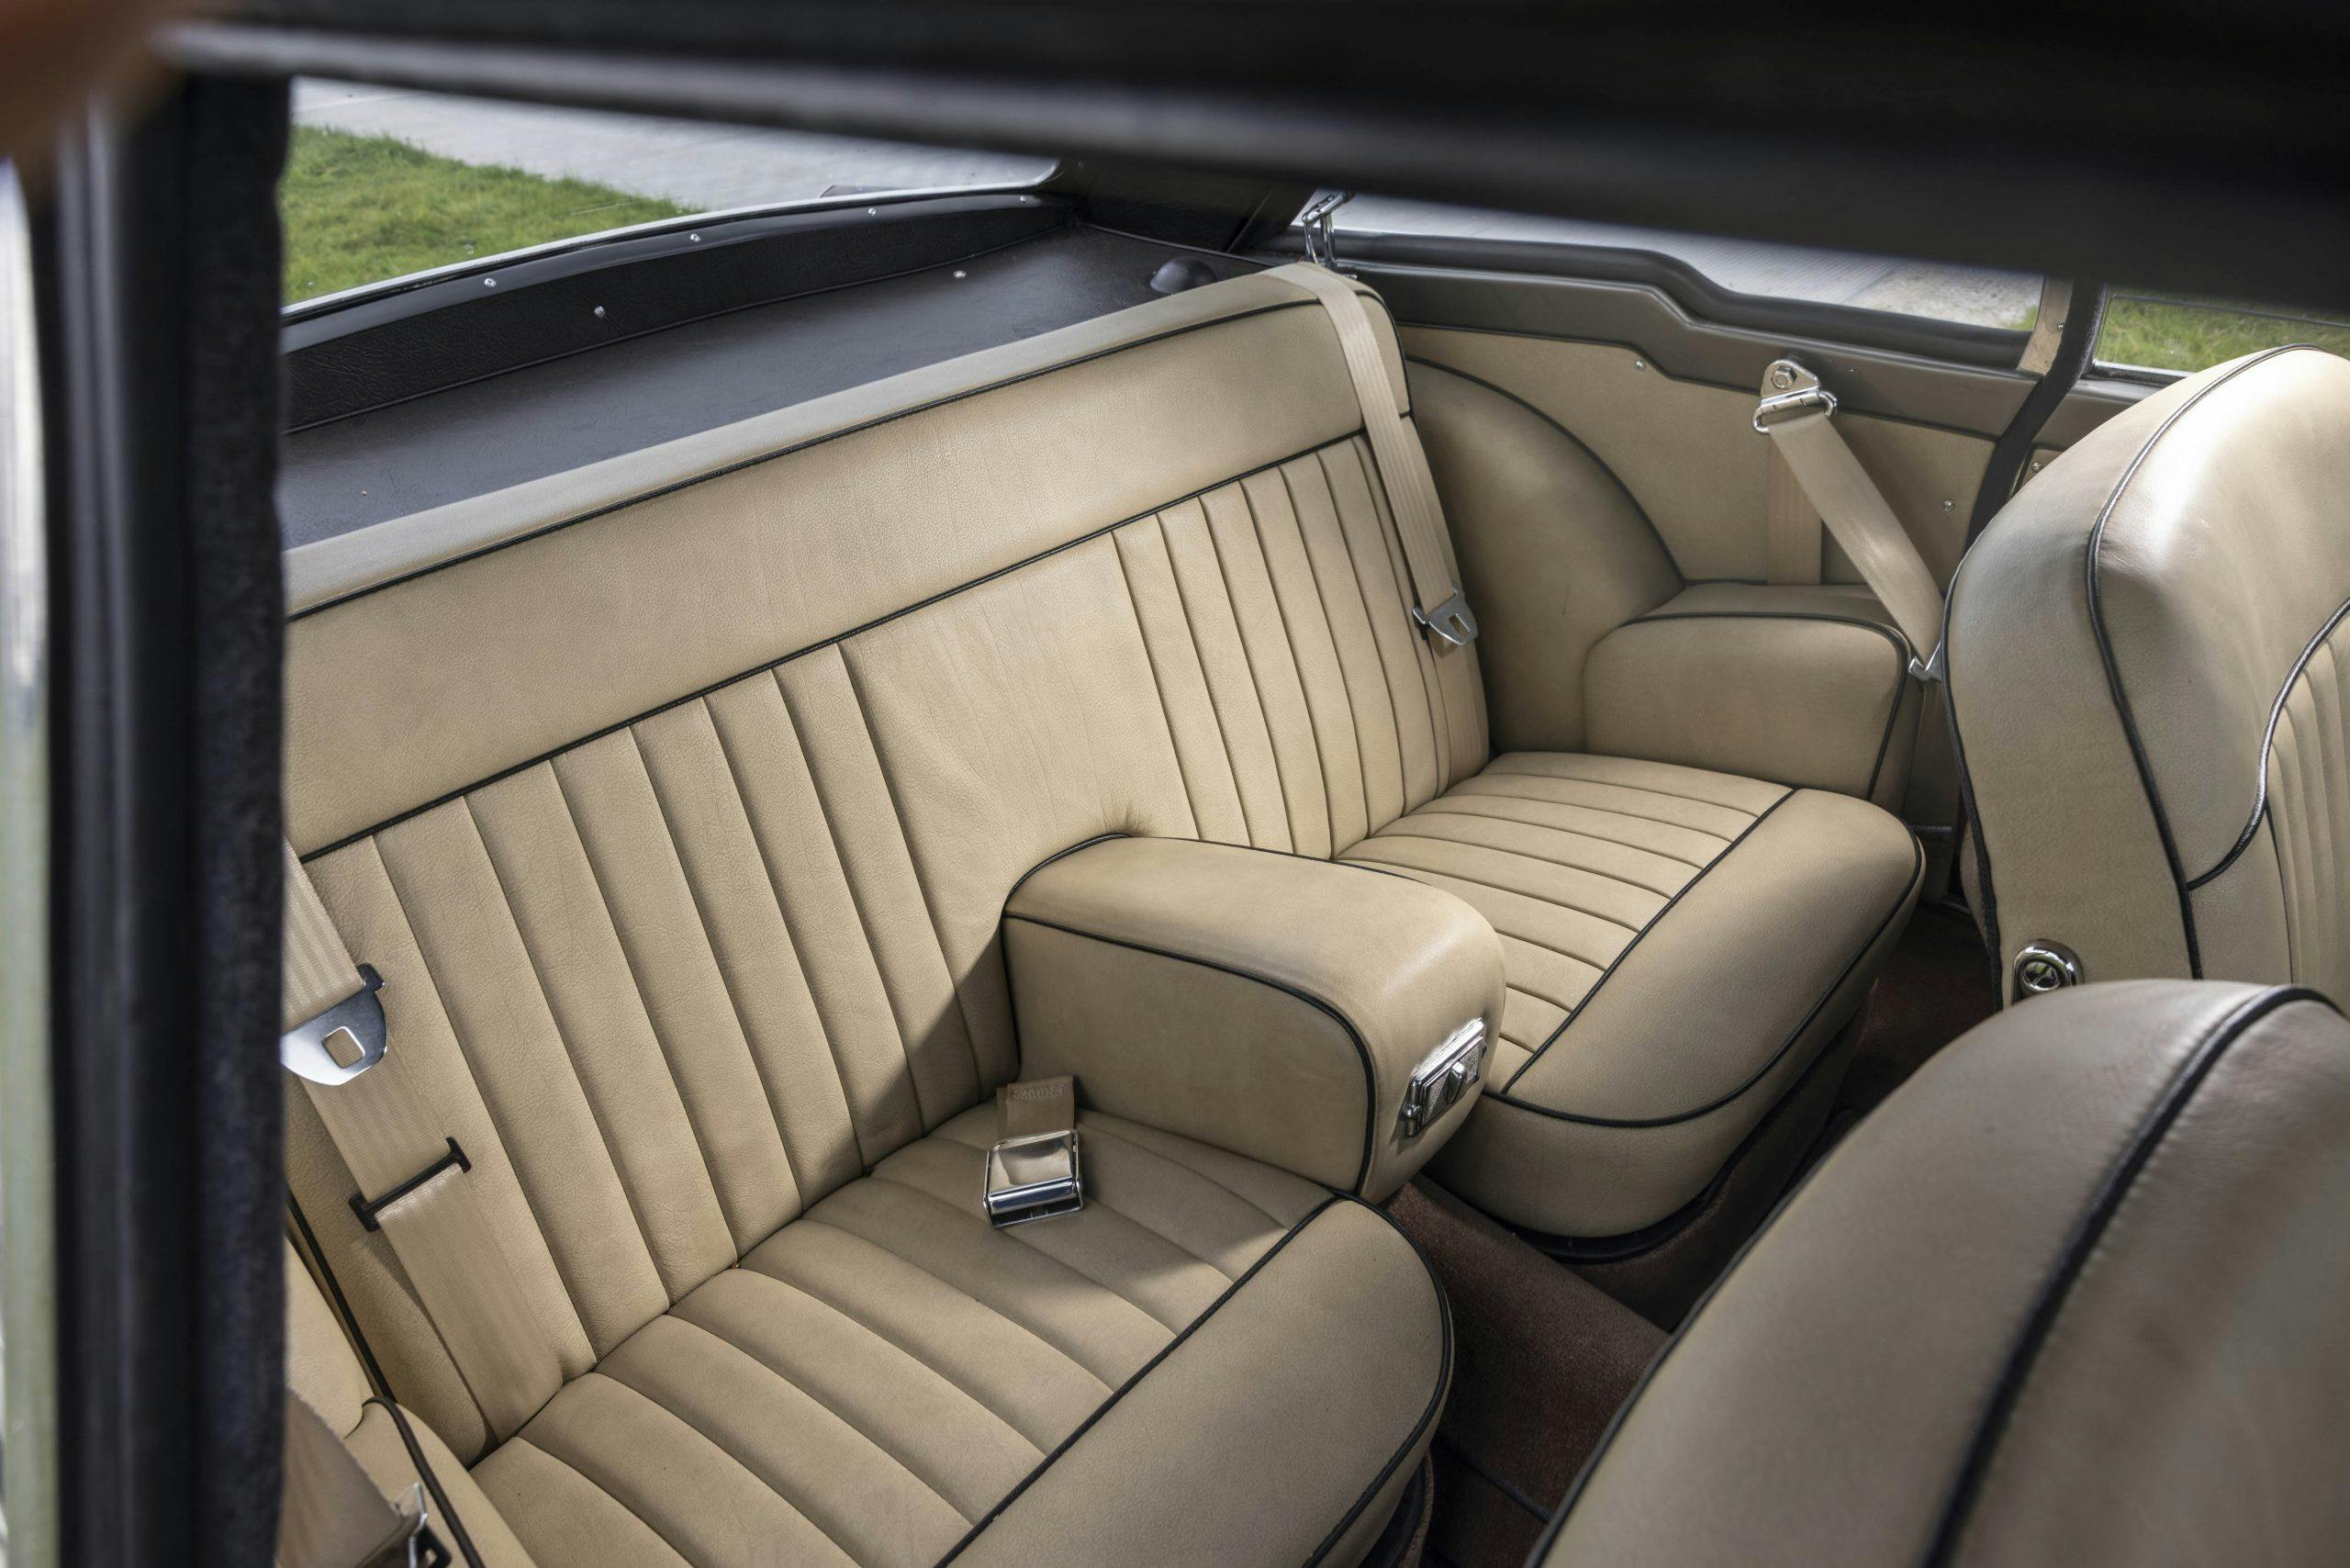 Zagato-bodied Bristol 406 interior rear seat